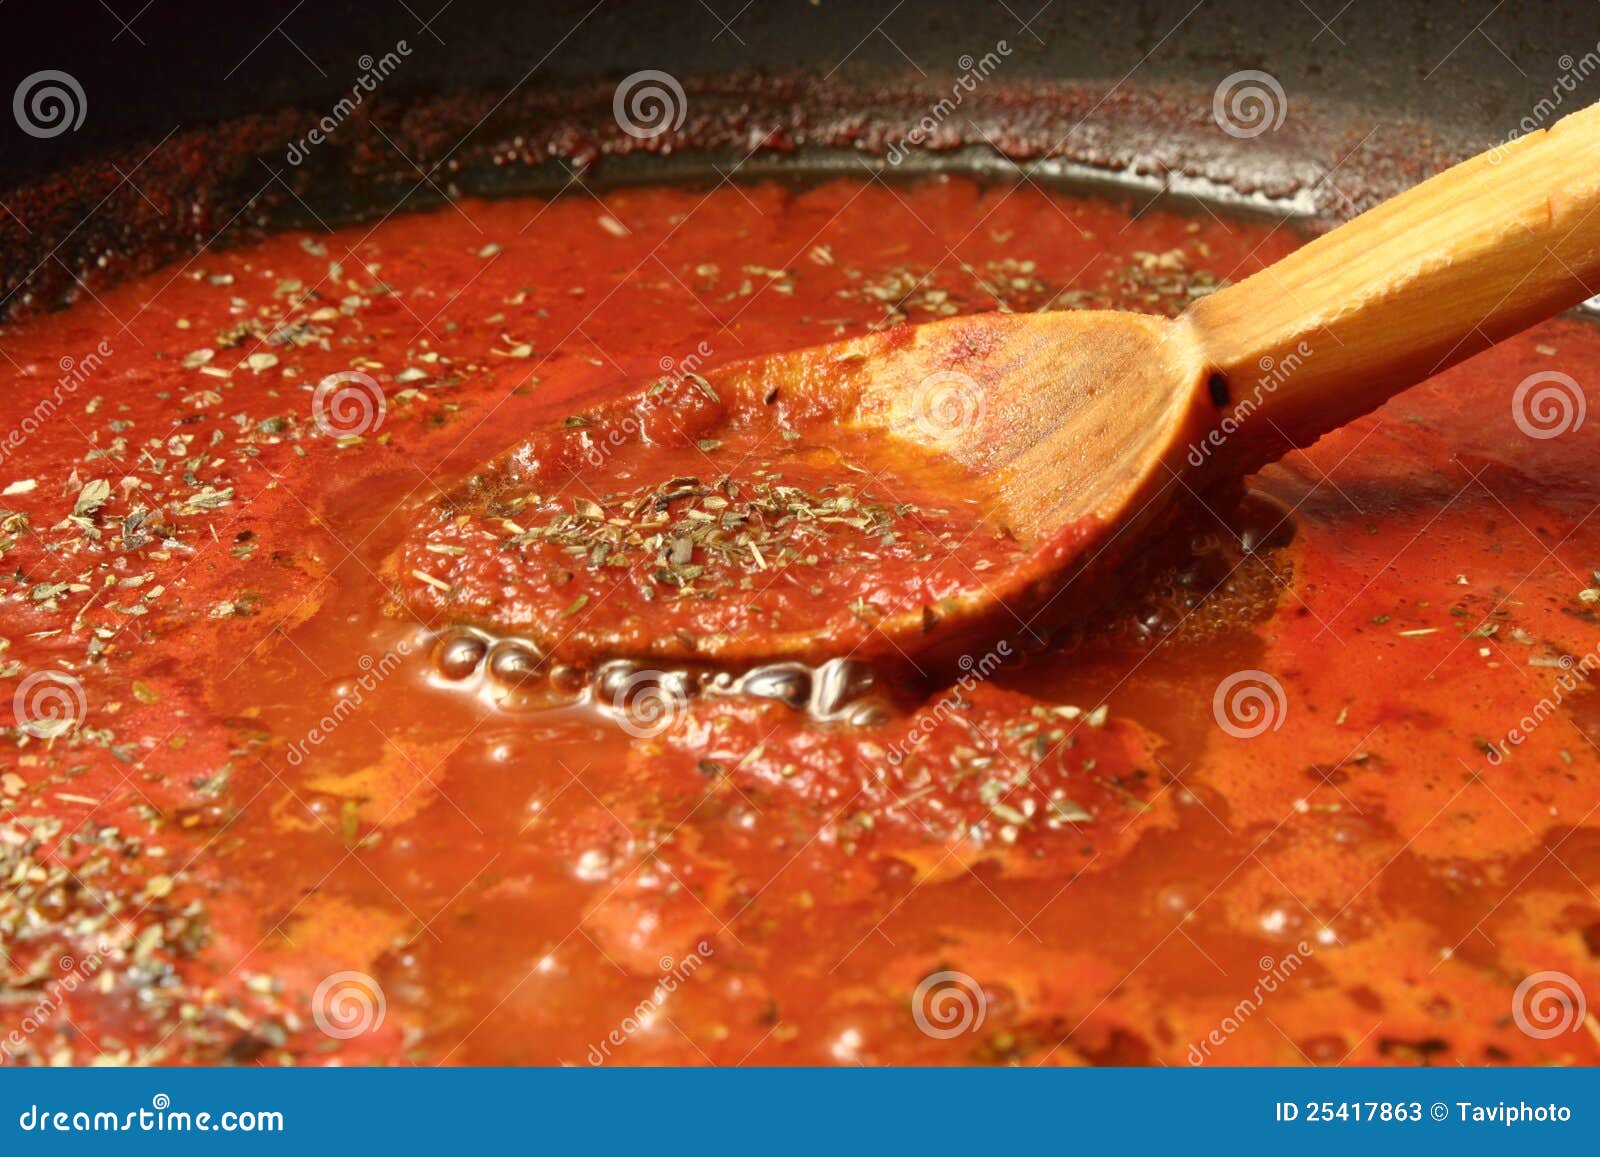 томатный соус рецепт пицца фото 93